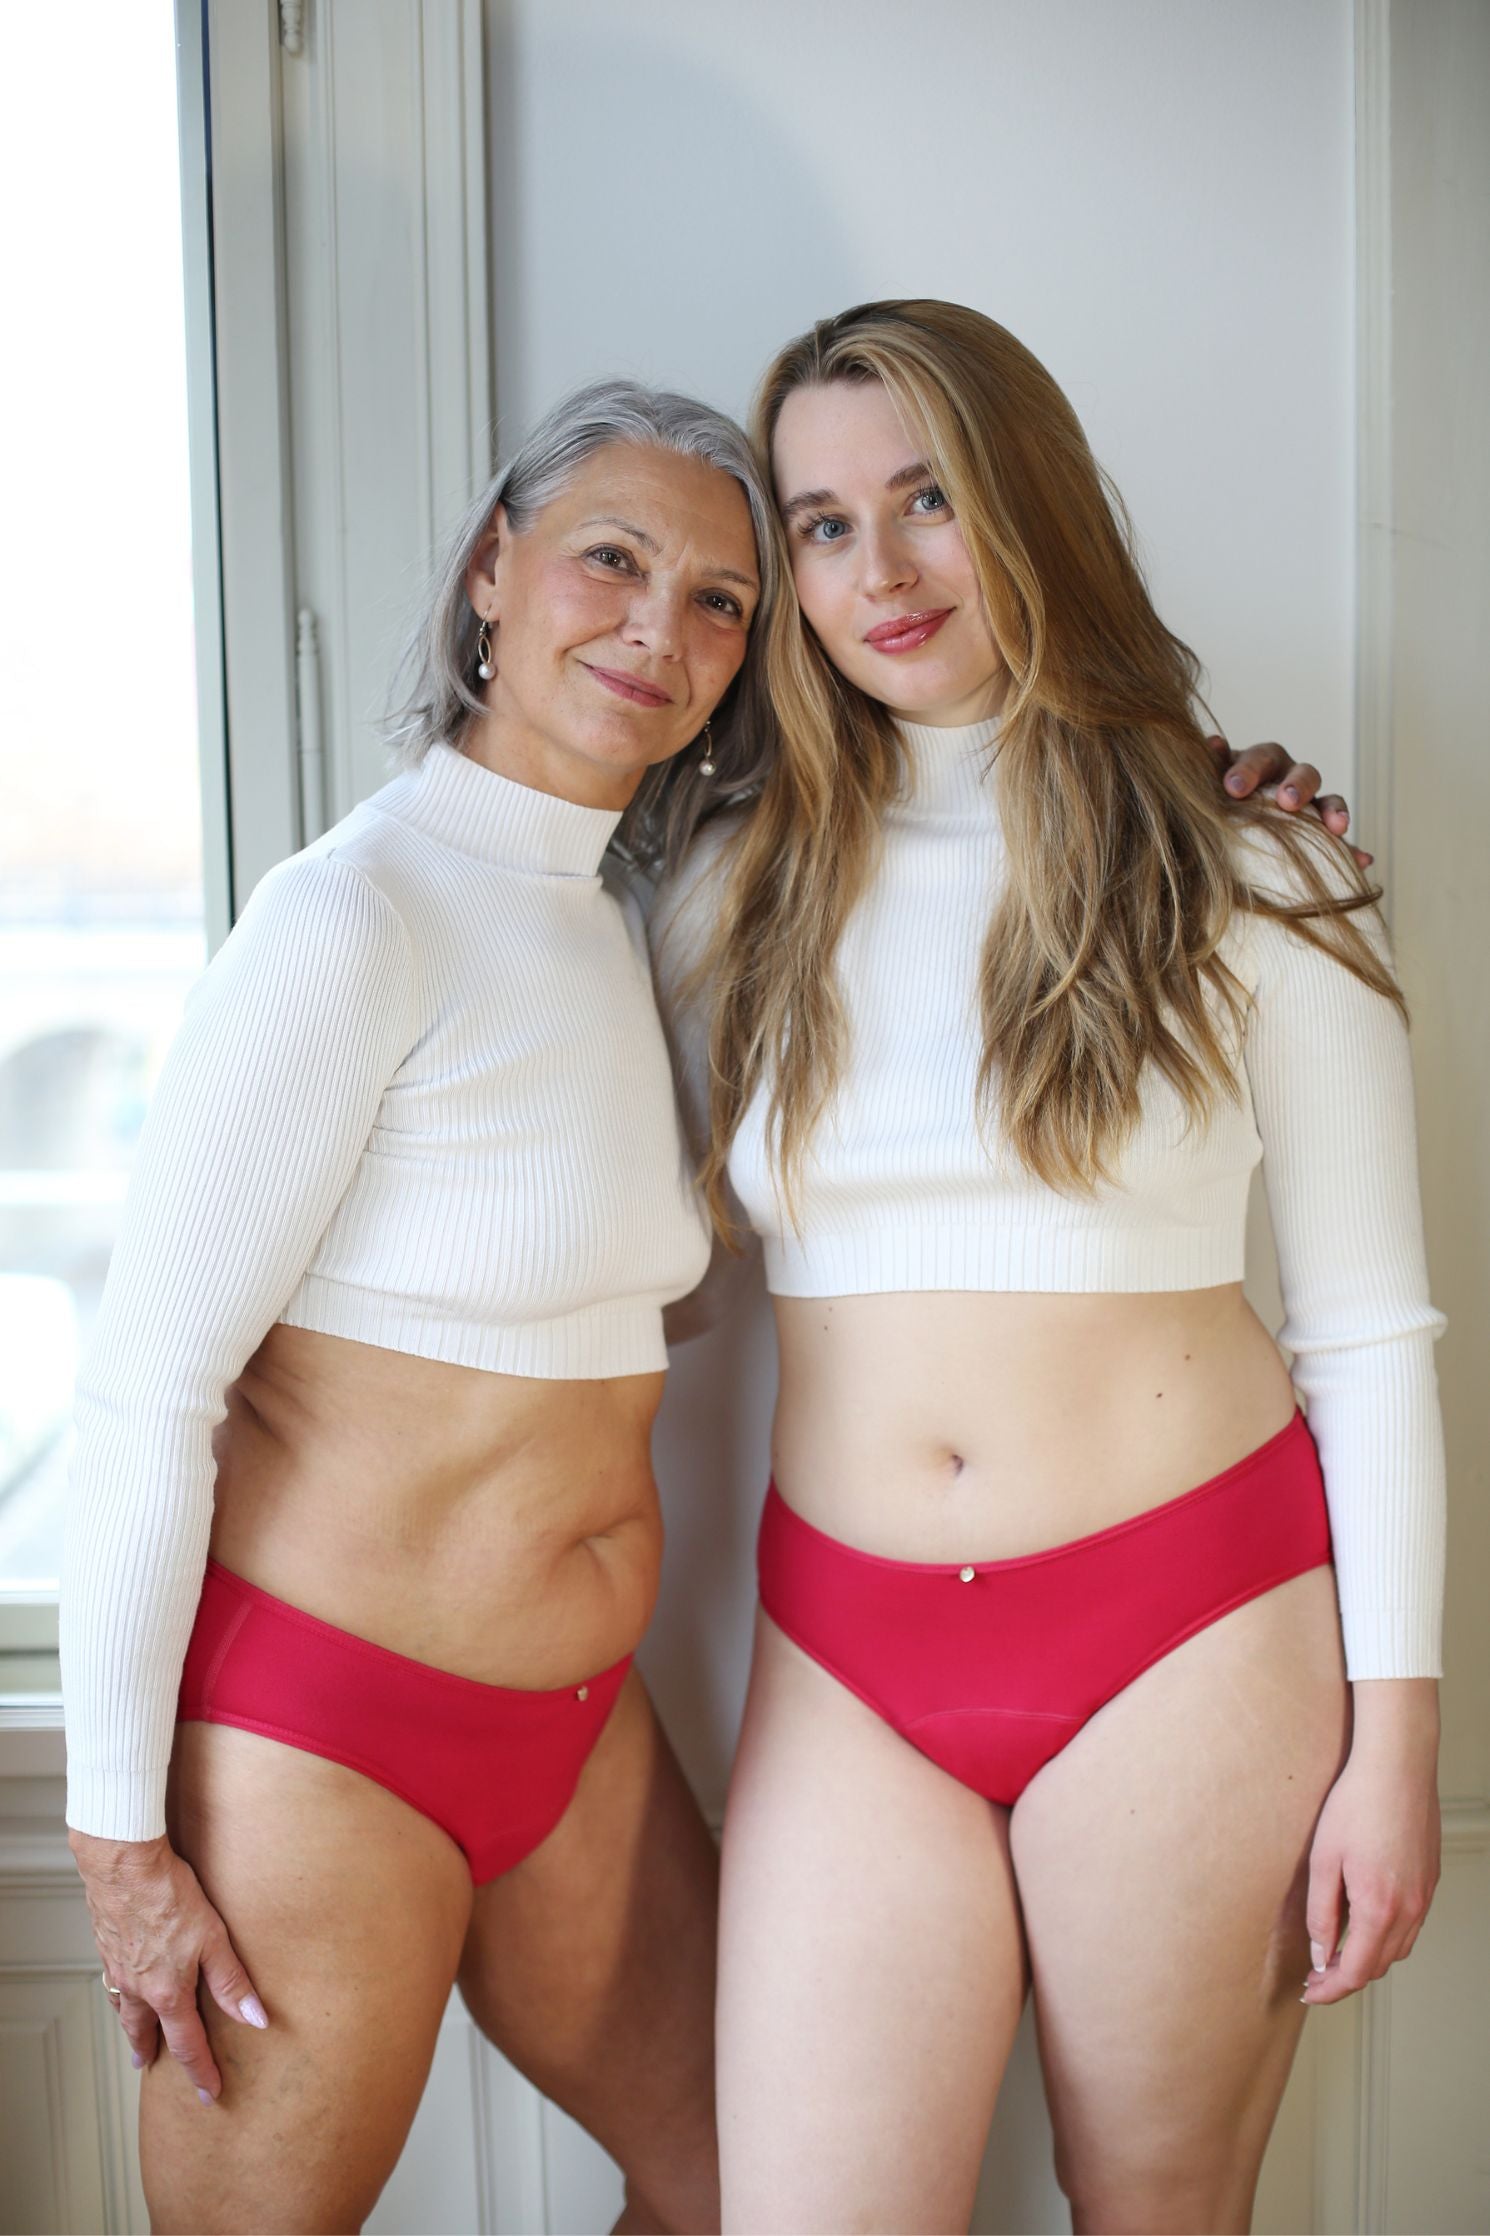 dvě modelky stojící před oknem, usmívající se do objektivu - na sobě mají klasicky střižené menstruační kalhotky ve svěže růžové barvě